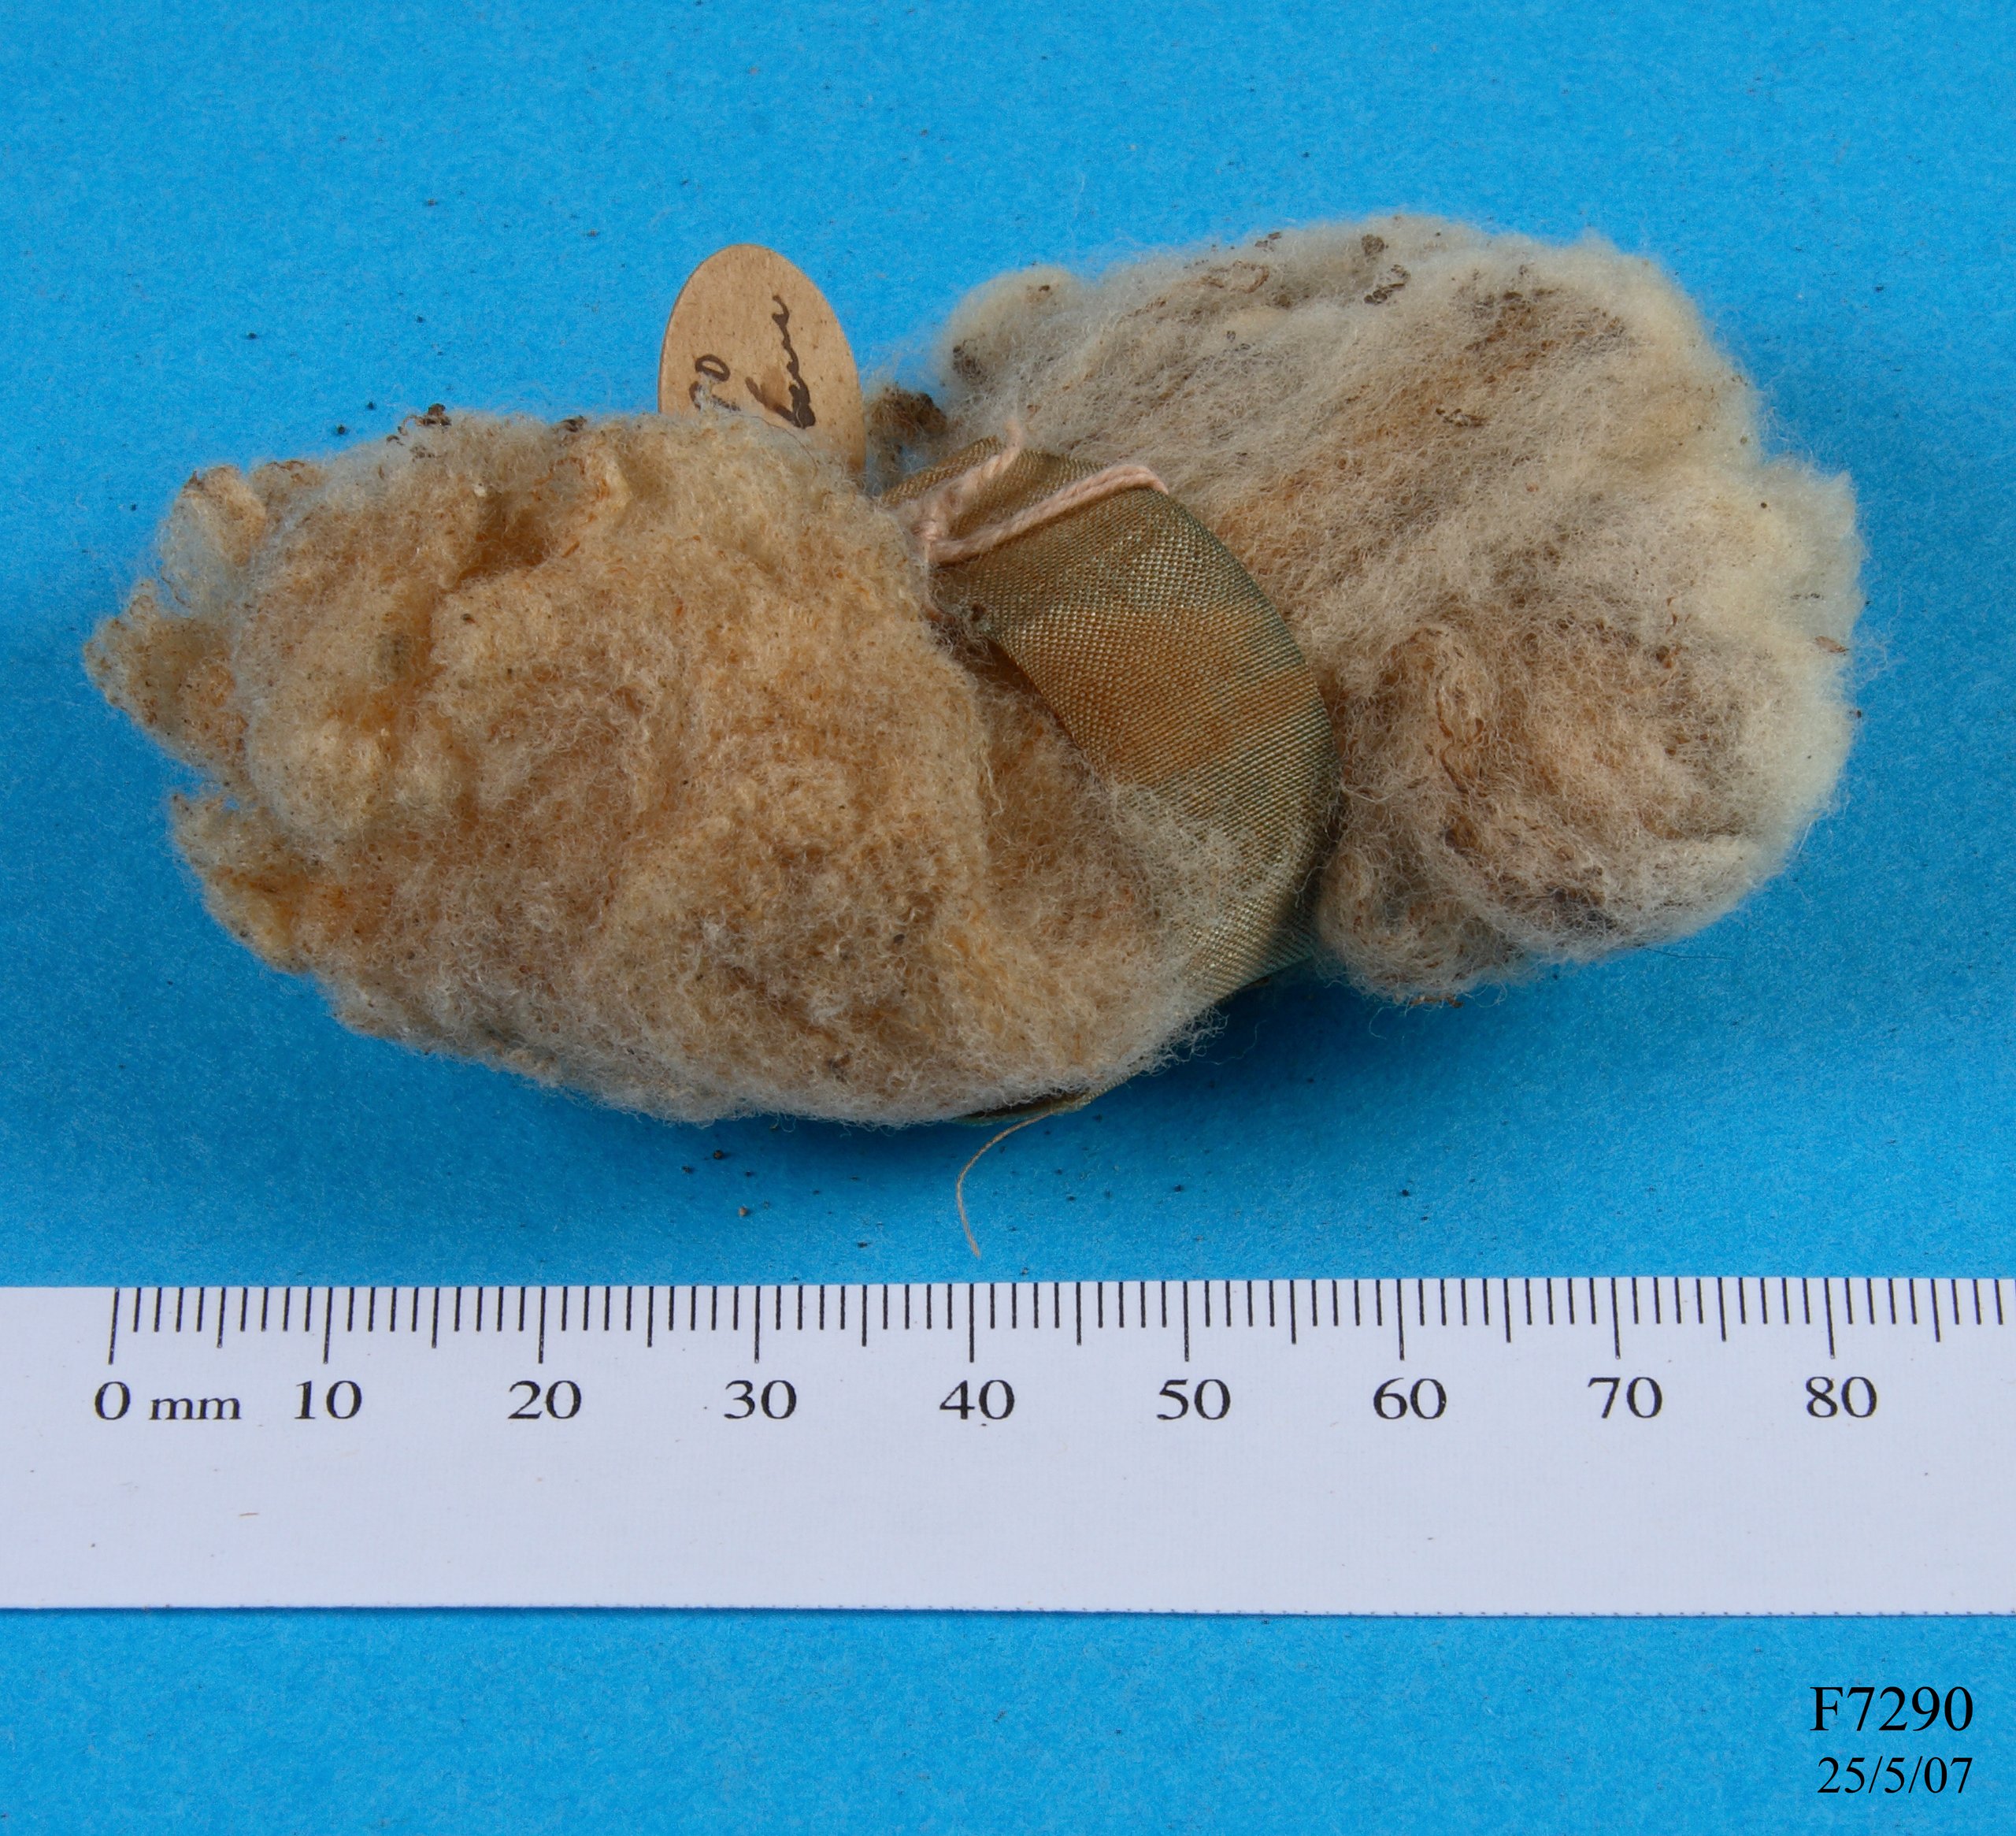 Wool specimen from a stud ewe